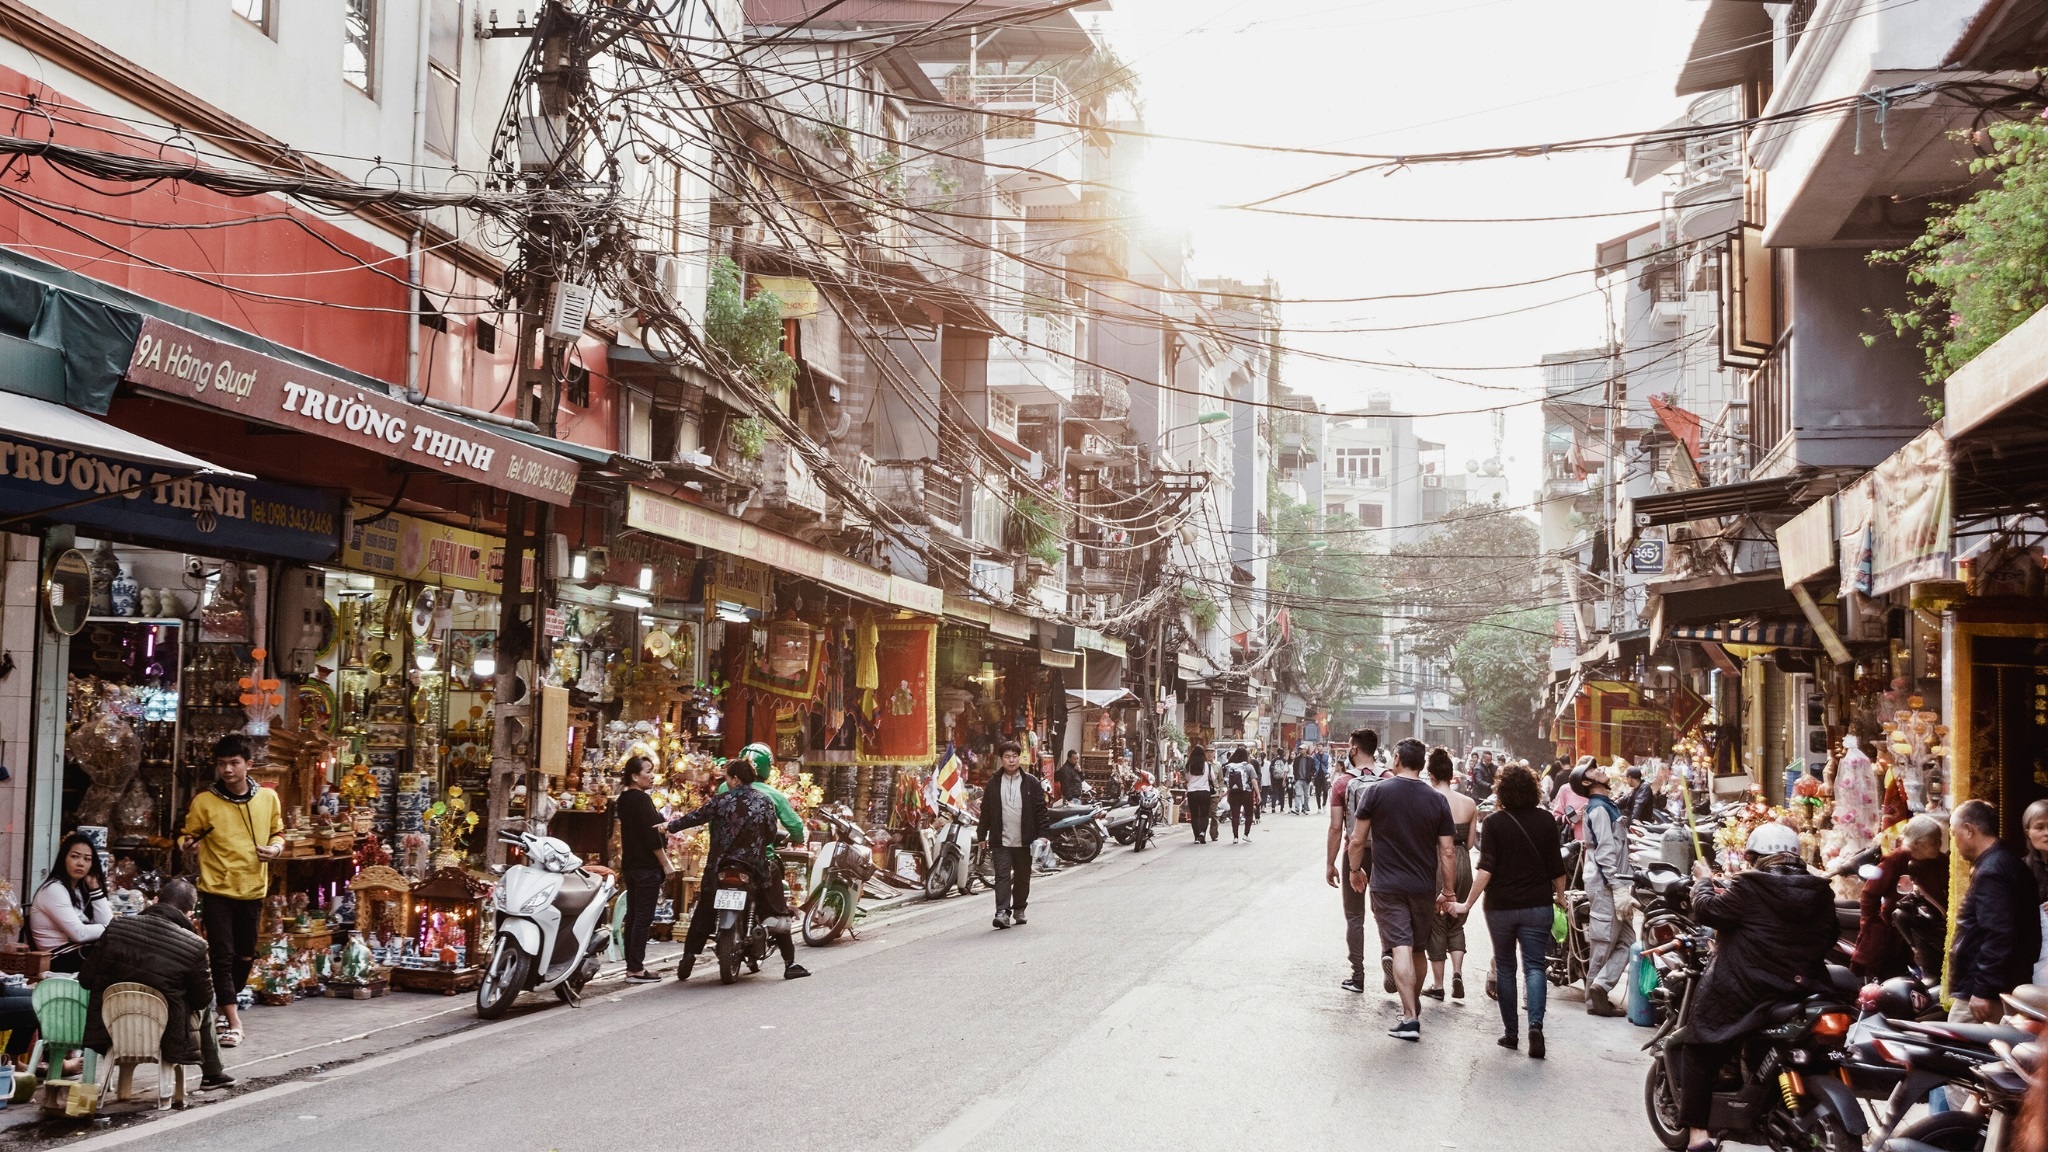 Bustling Street Life Of Hanoi Old Quarter